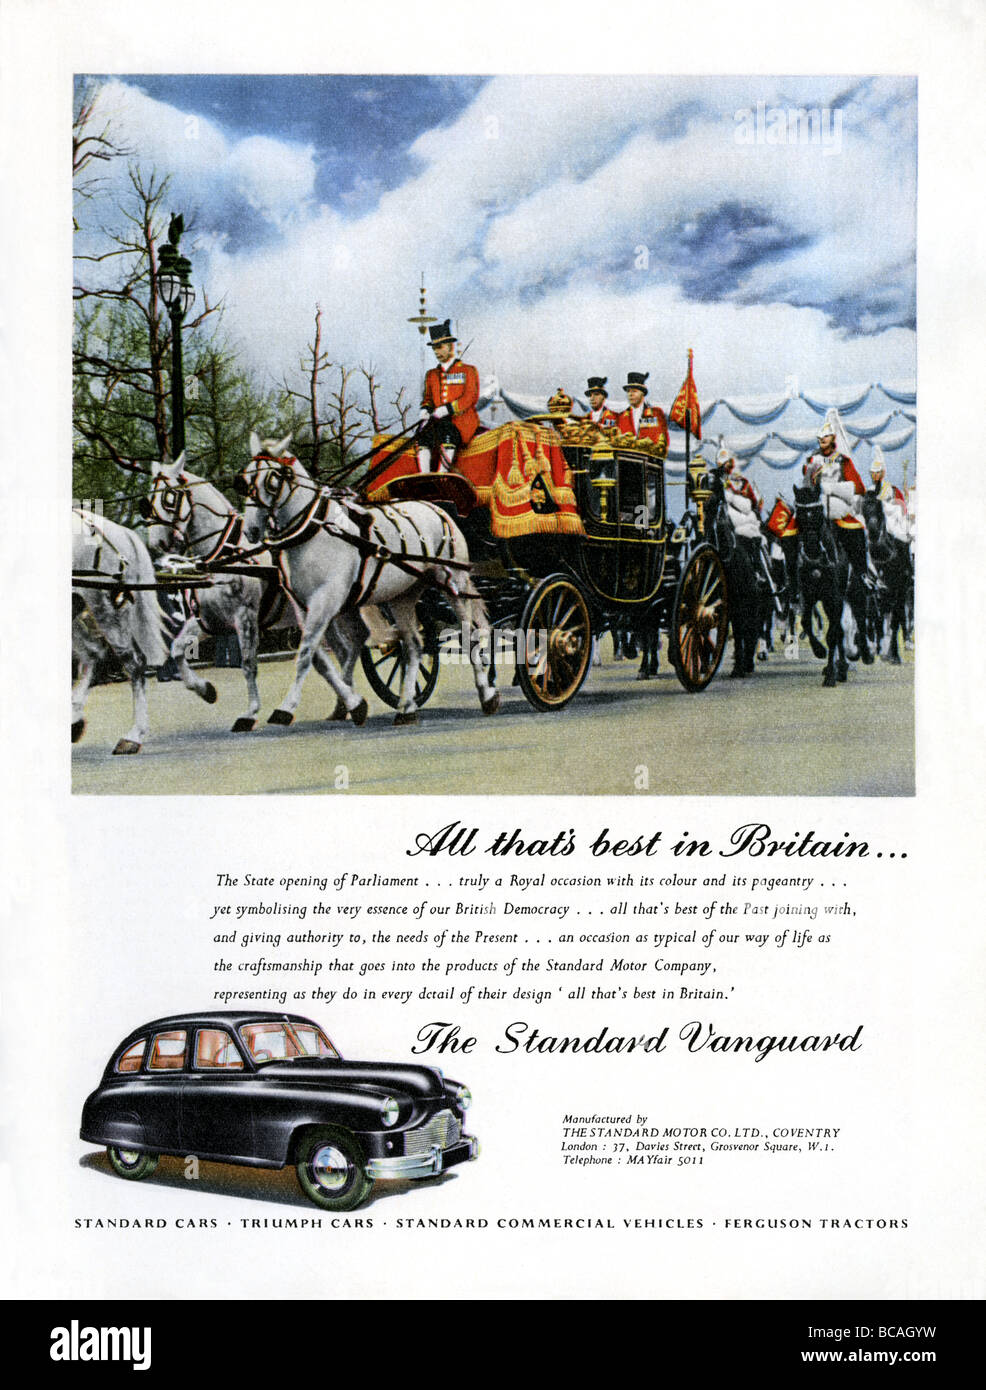 Couleur 1951 publicité pour la voiture Standard Vanguard doté d'une illustration de l'État ouverture du Parlement Banque D'Images